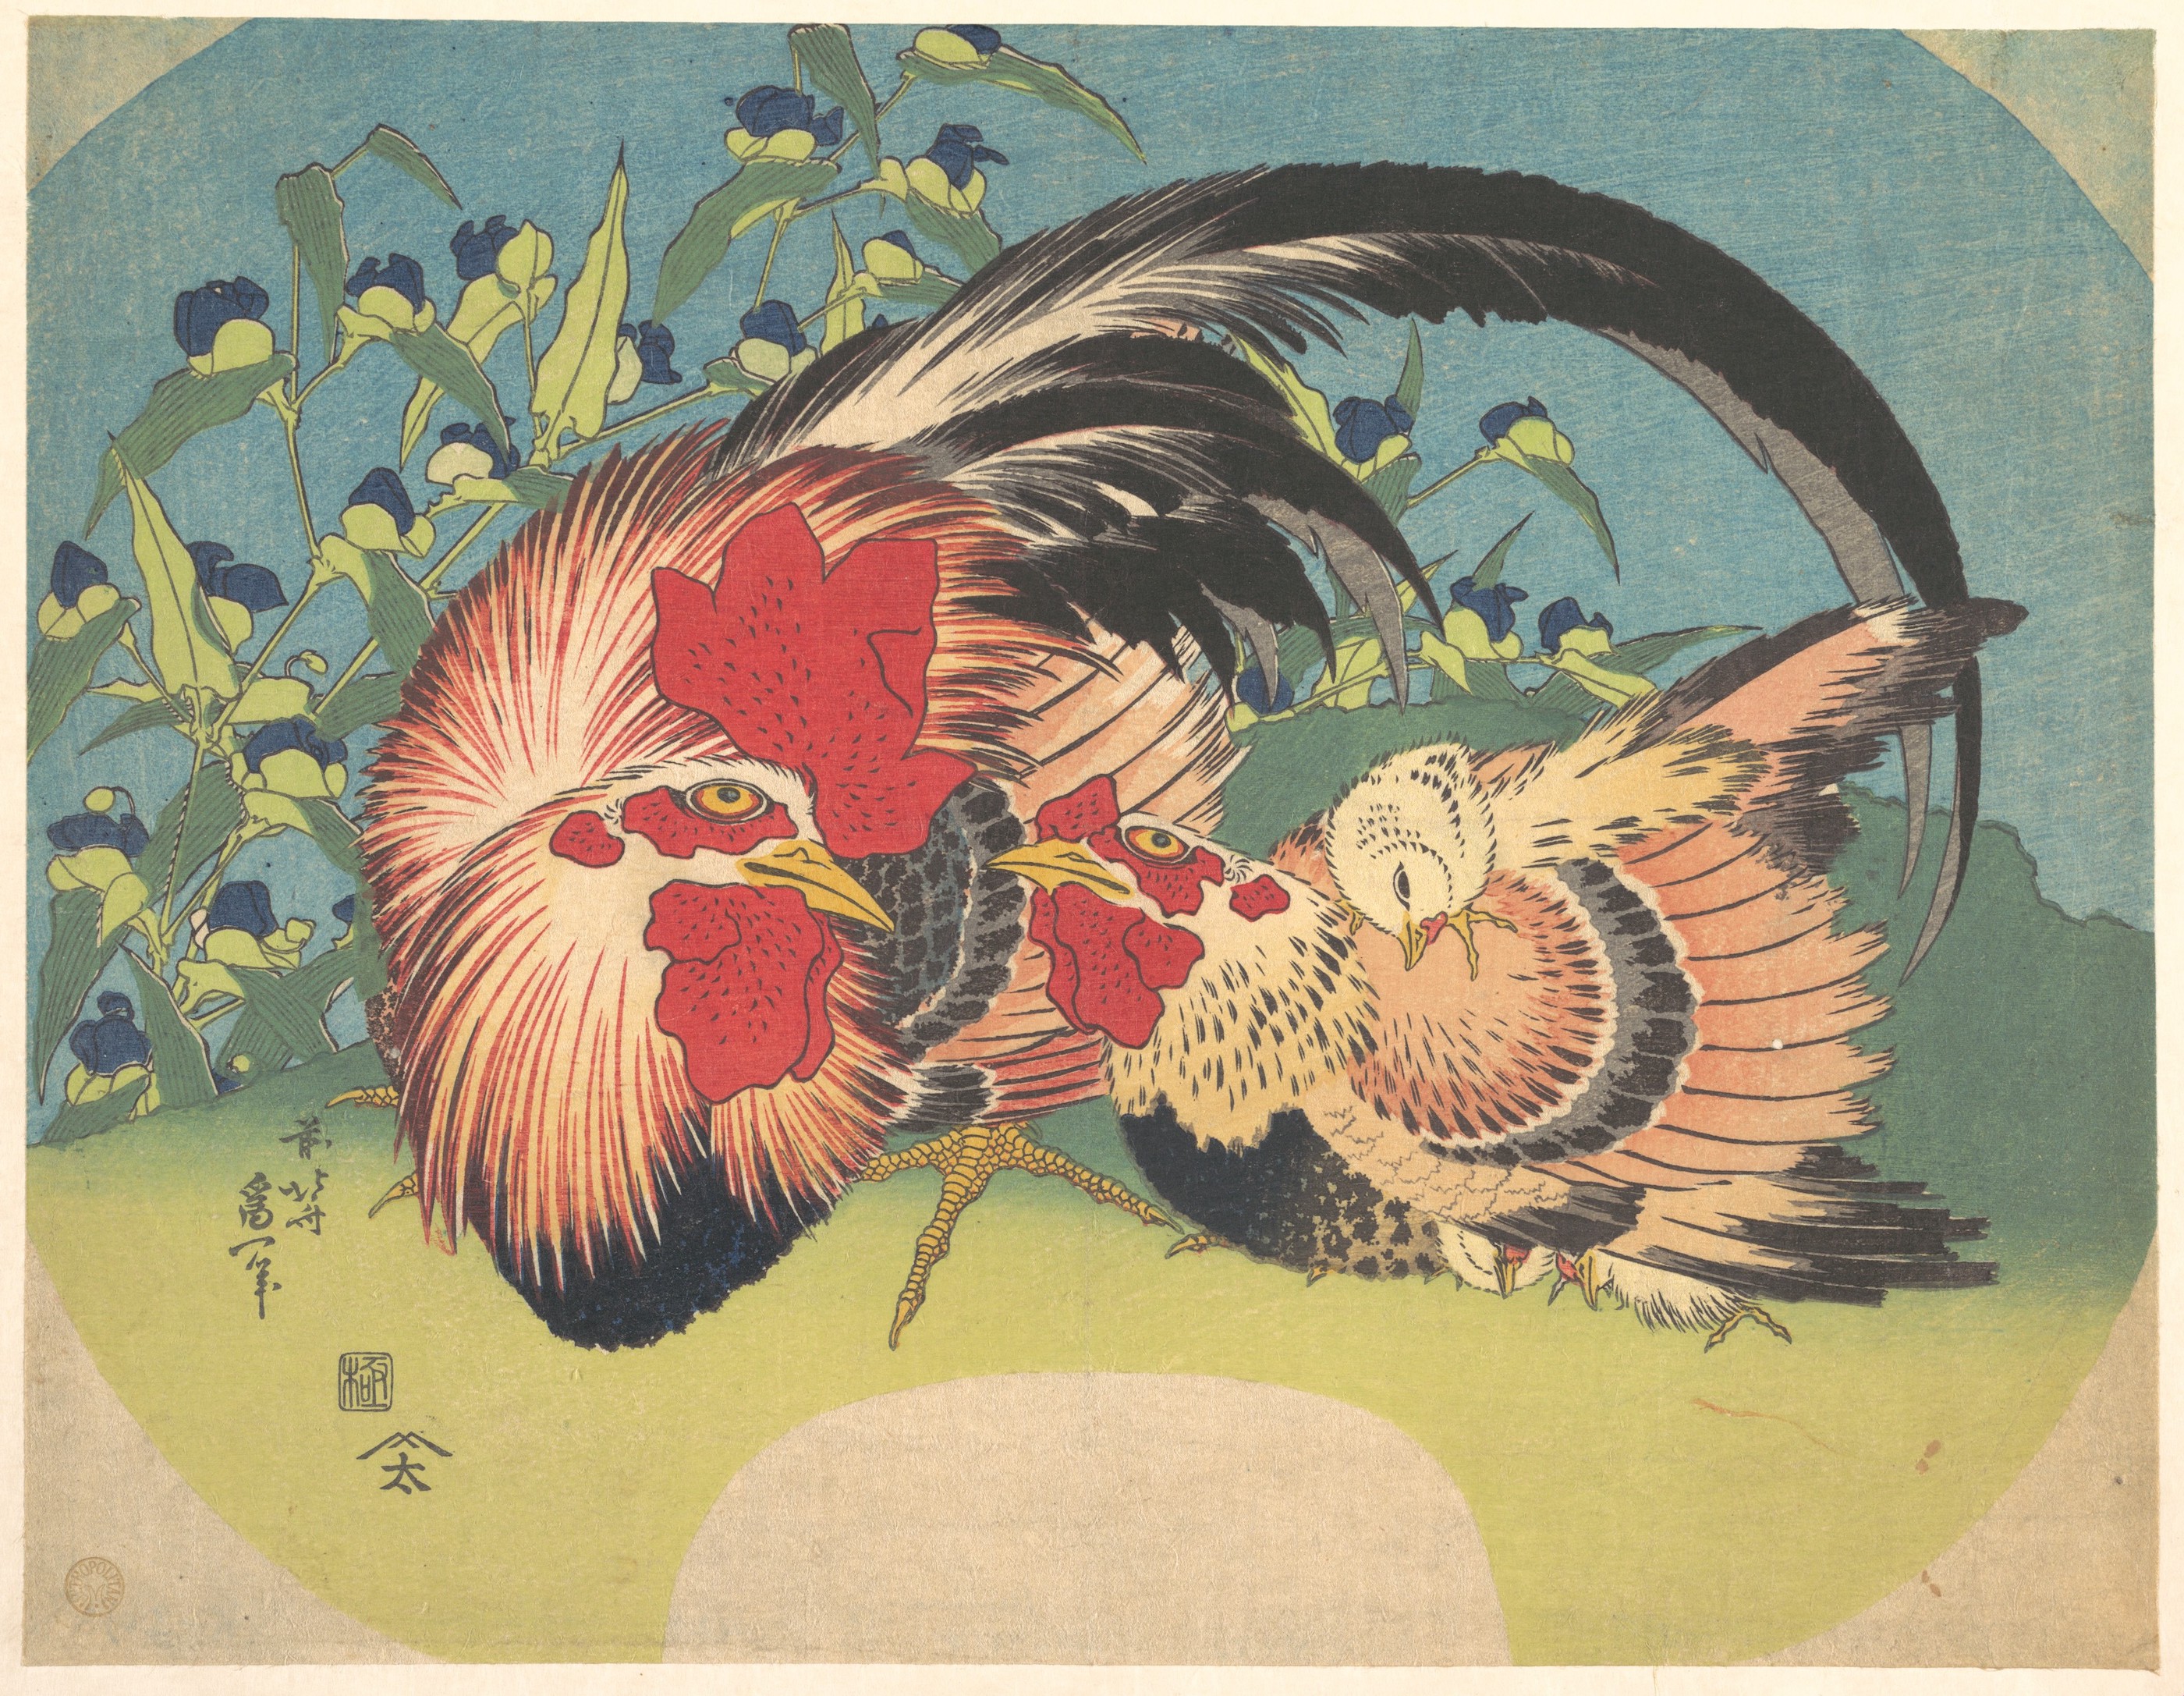 公鸡、母鸡、小鸡和紫露草 by 北斋 葛饰 - c.1830–33 - 22.9 x 29.2 cm 